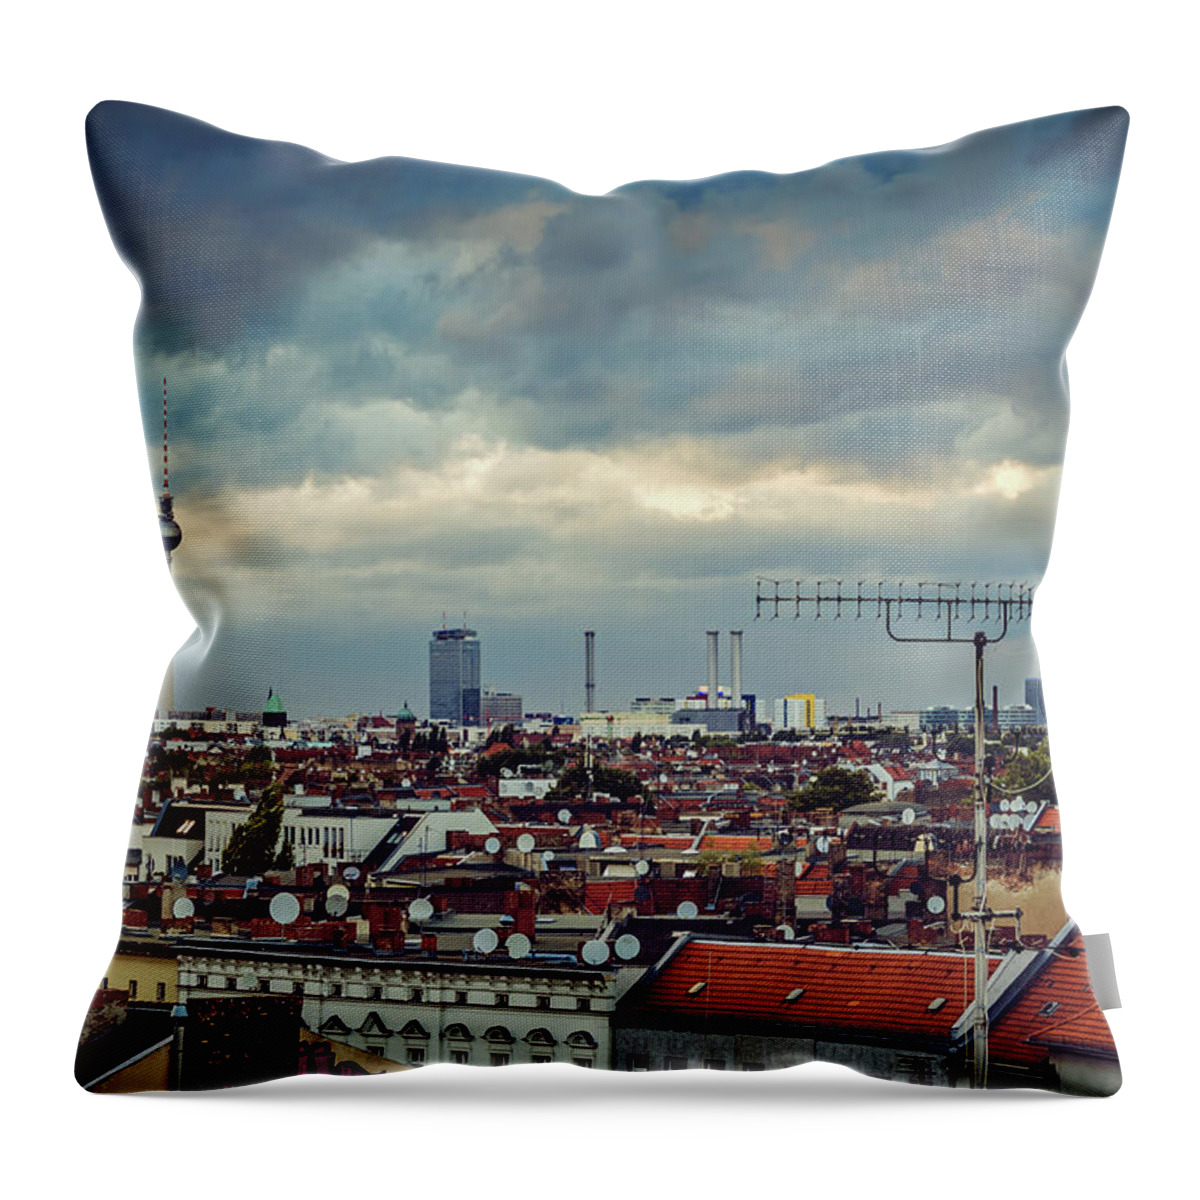 Berlin Throw Pillow featuring the photograph Berlin Skyline #5 by Alexander Voss